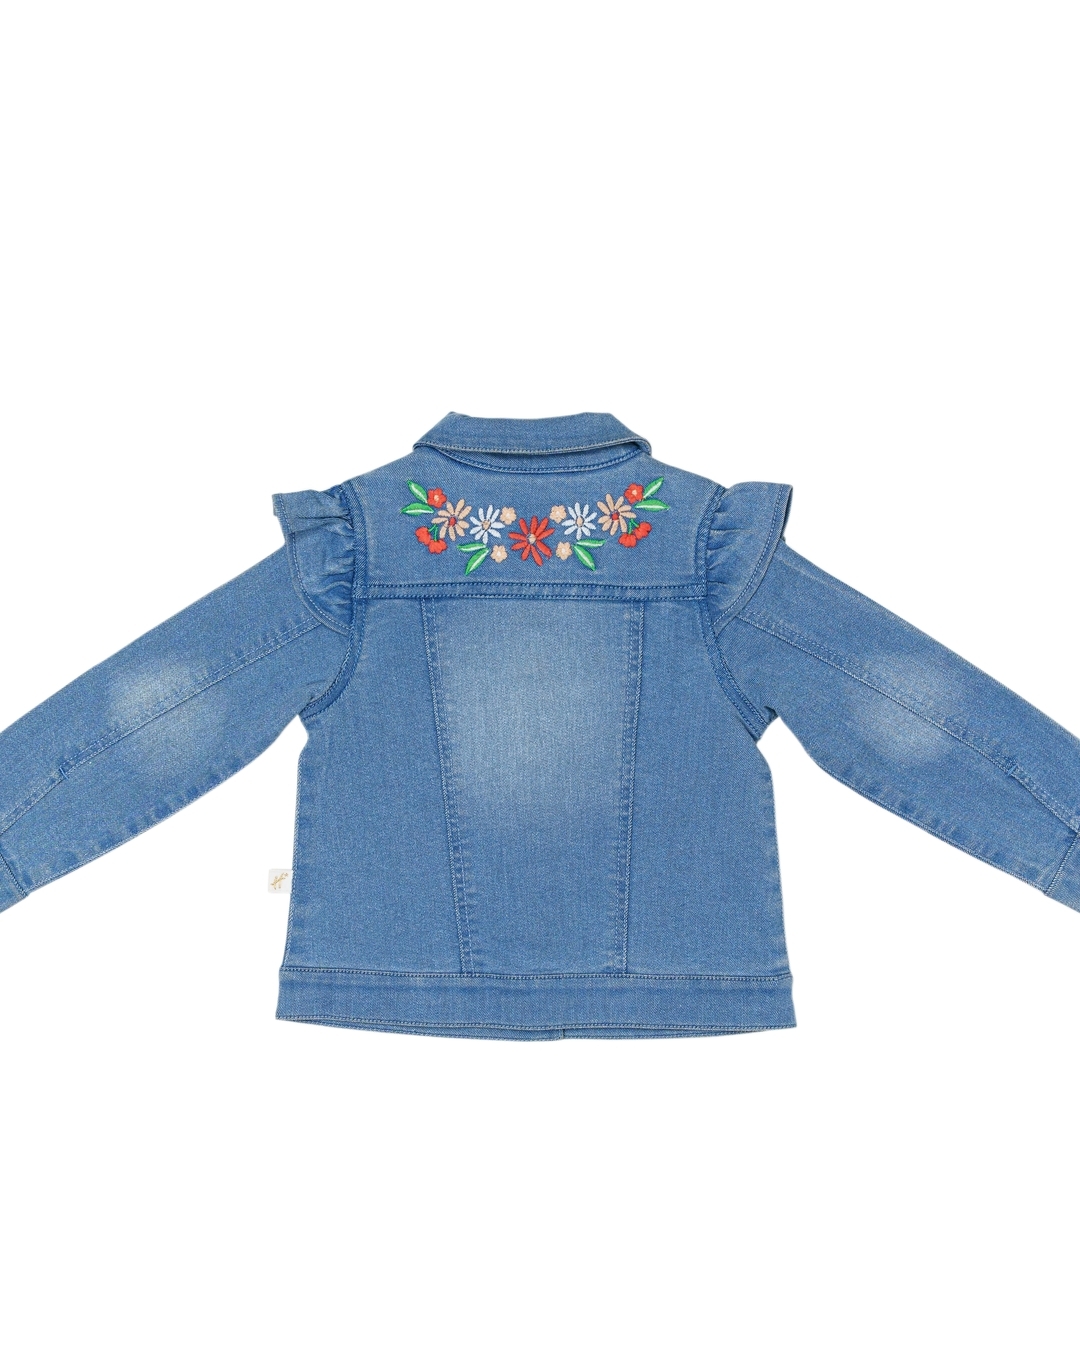 Toddler Baby Girls Floral Print Bowknot Short Sleeve Princess Denim Dr –  Elite Outlet Store